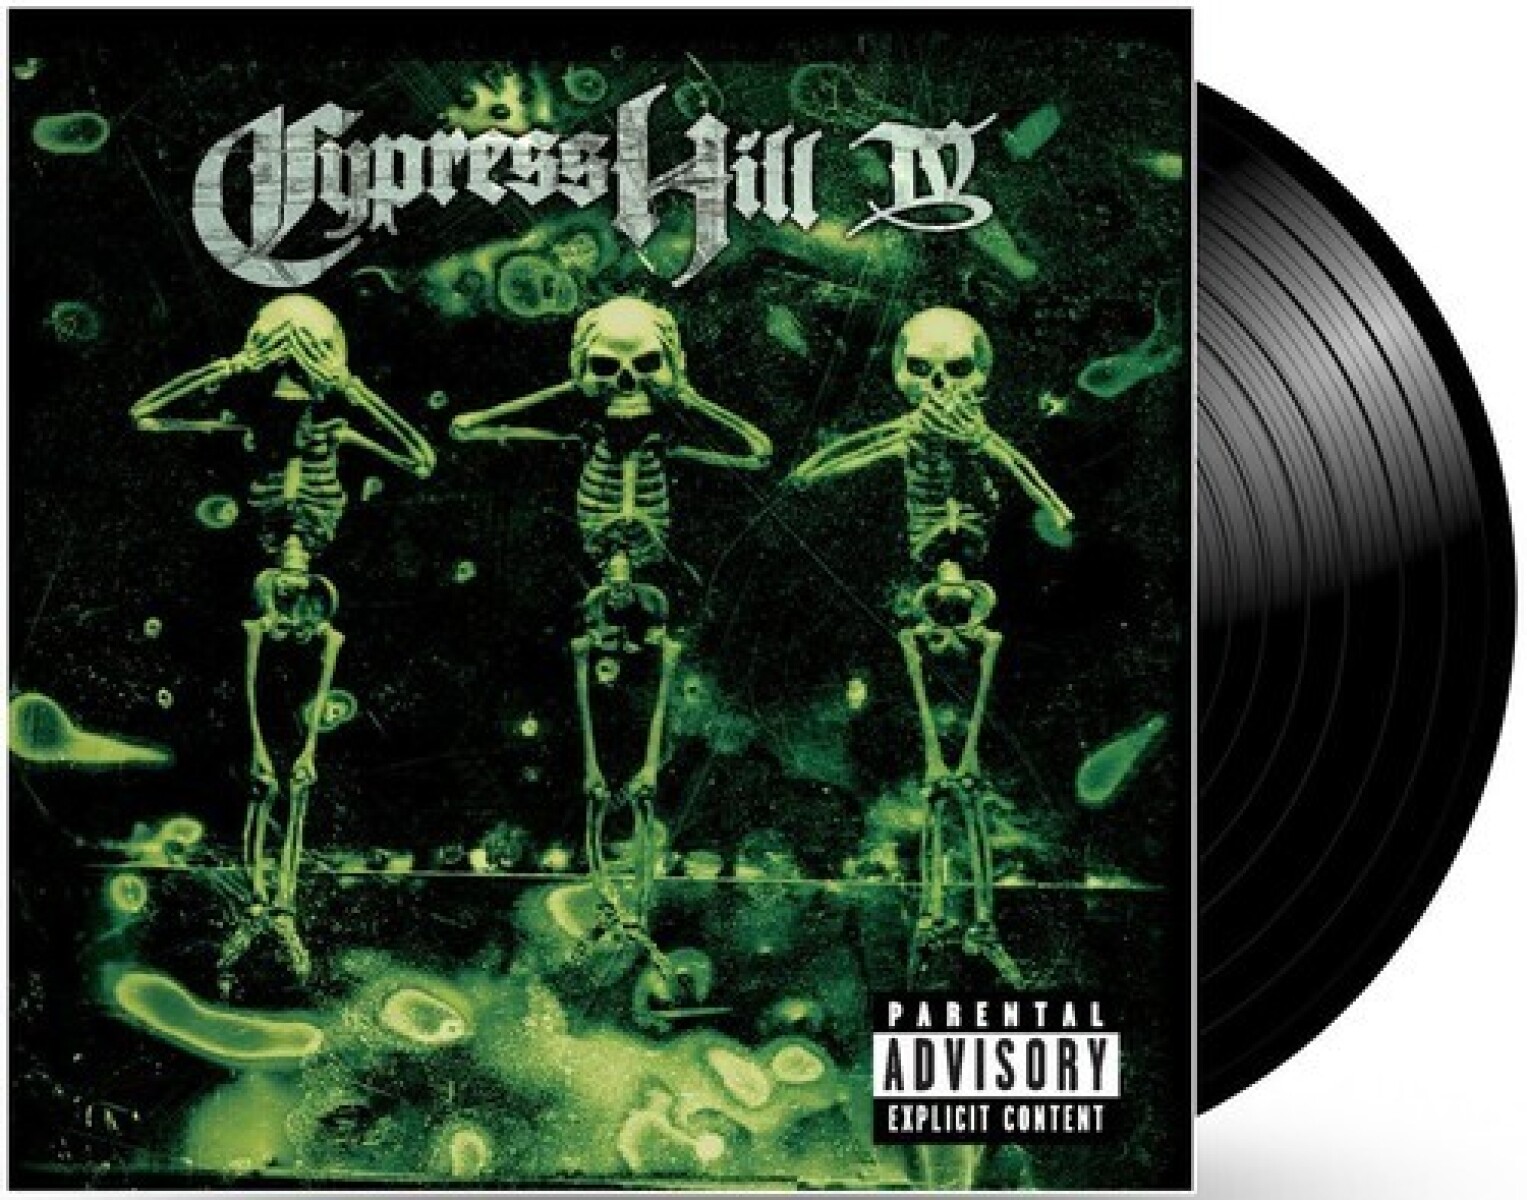 Cypress Hill-iv. Mov Transition 